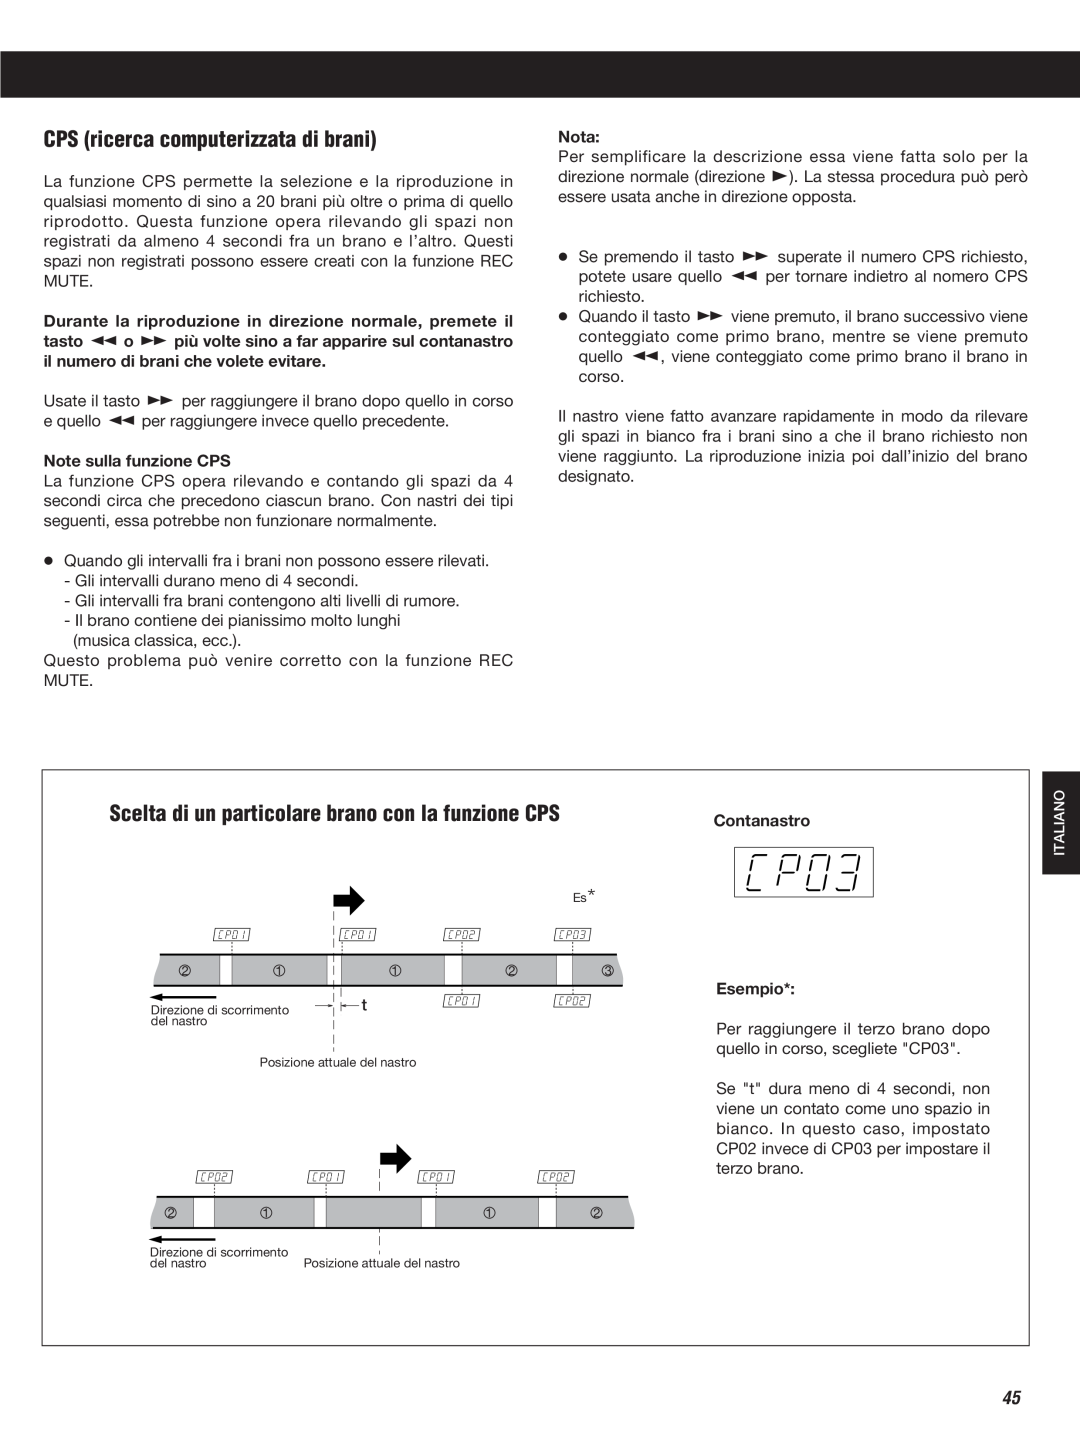 Teac W-860R owner manual CPS ricerca computerizzata di brani, Note sulla funzione CPS, Nota, Contanastro Esempio 